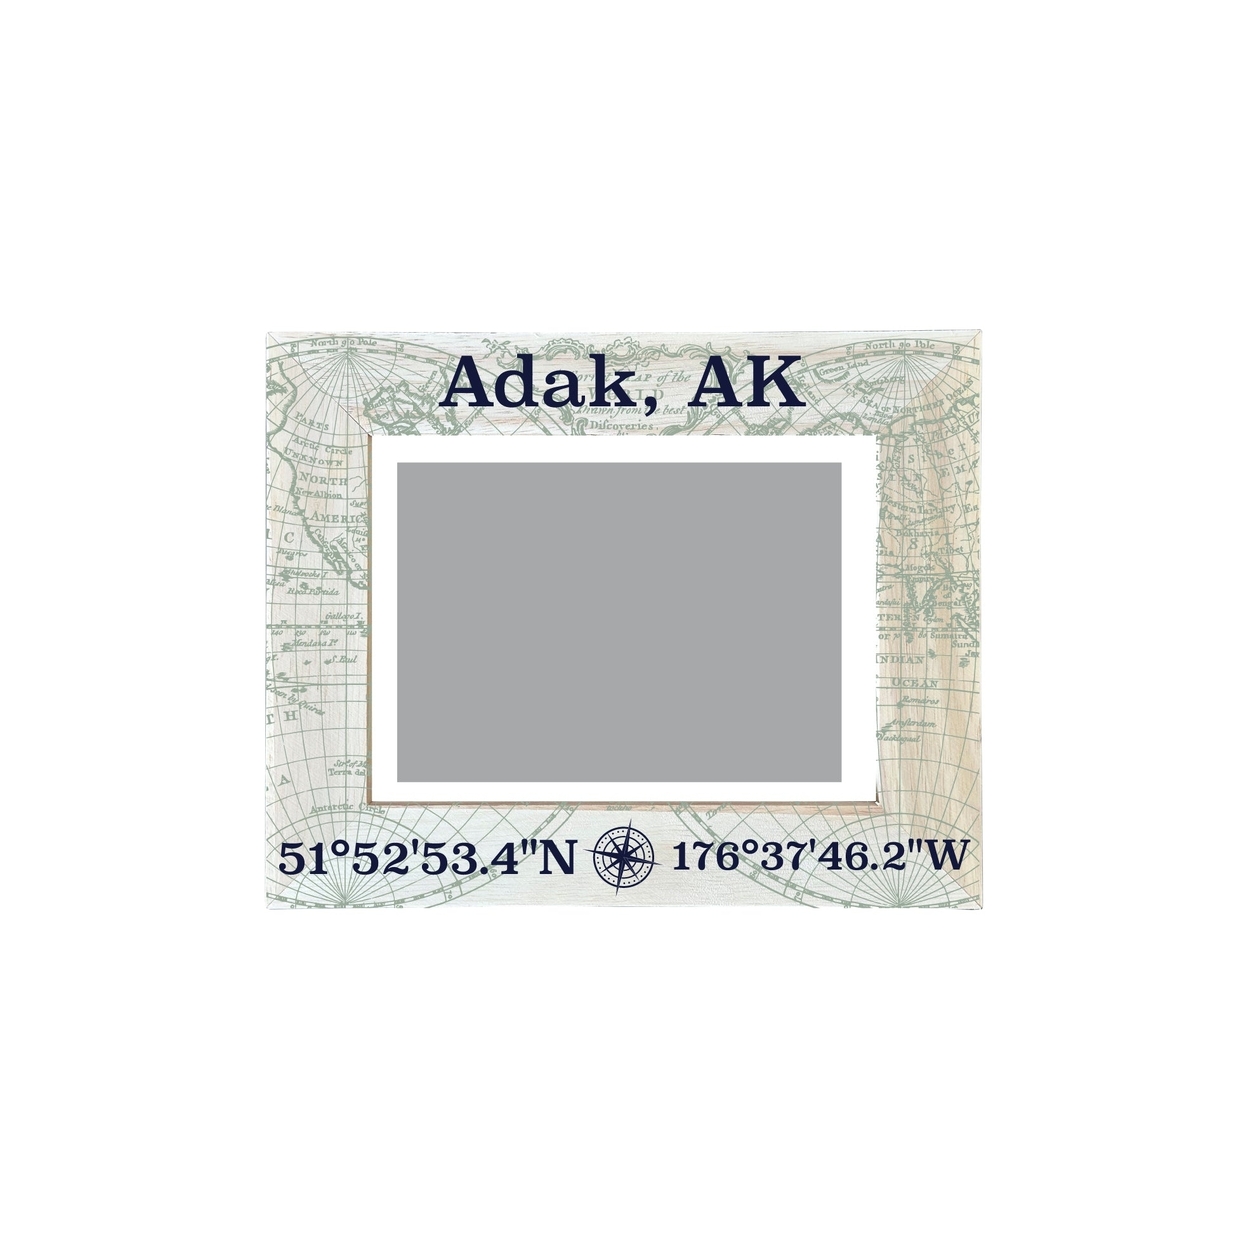 Adak Alaska Souvenir Wooden Photo Frame Compass Coordinates Design Matted To 4 X 6